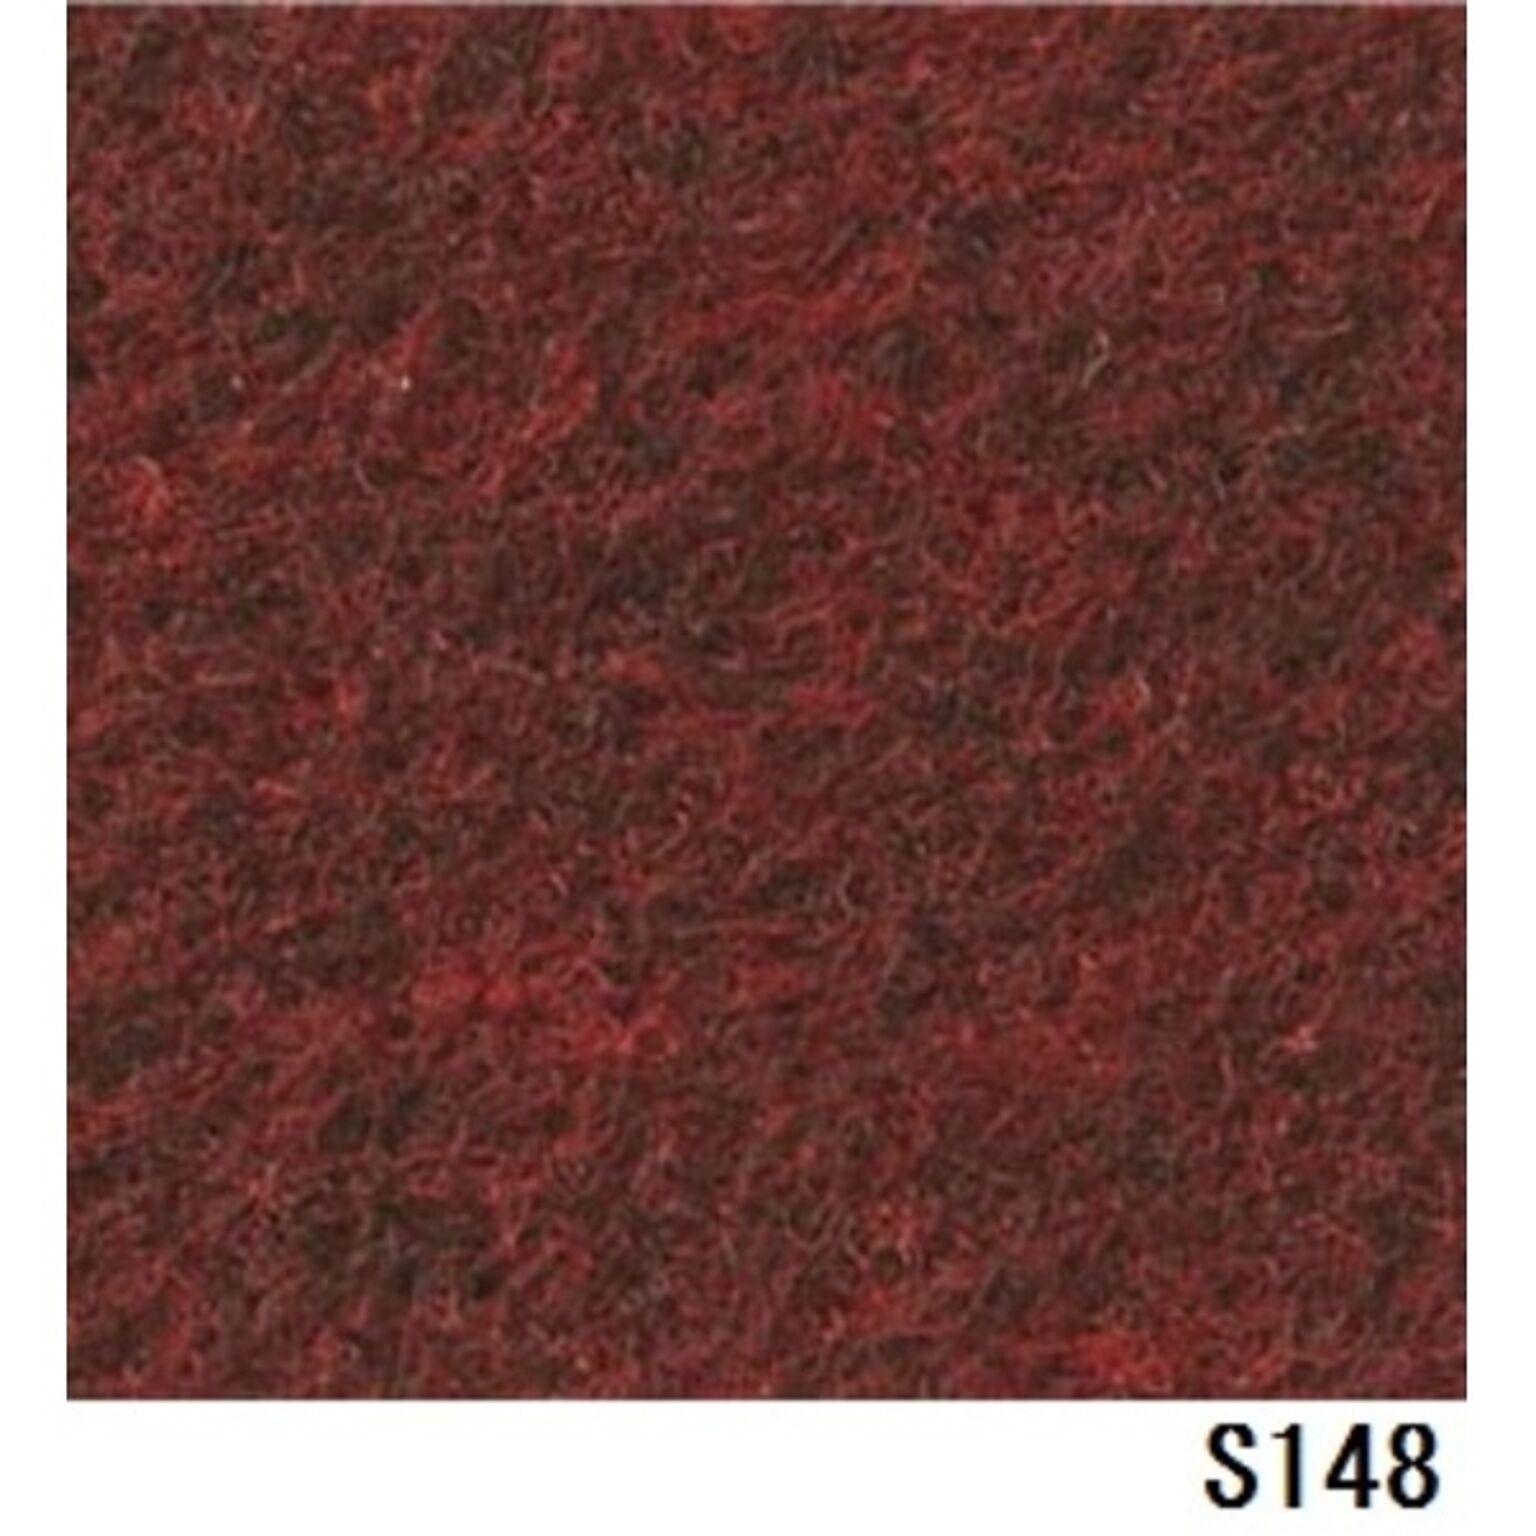 パンチカーペット サンゲツSペットECO 色番S-148 91cm巾×6m